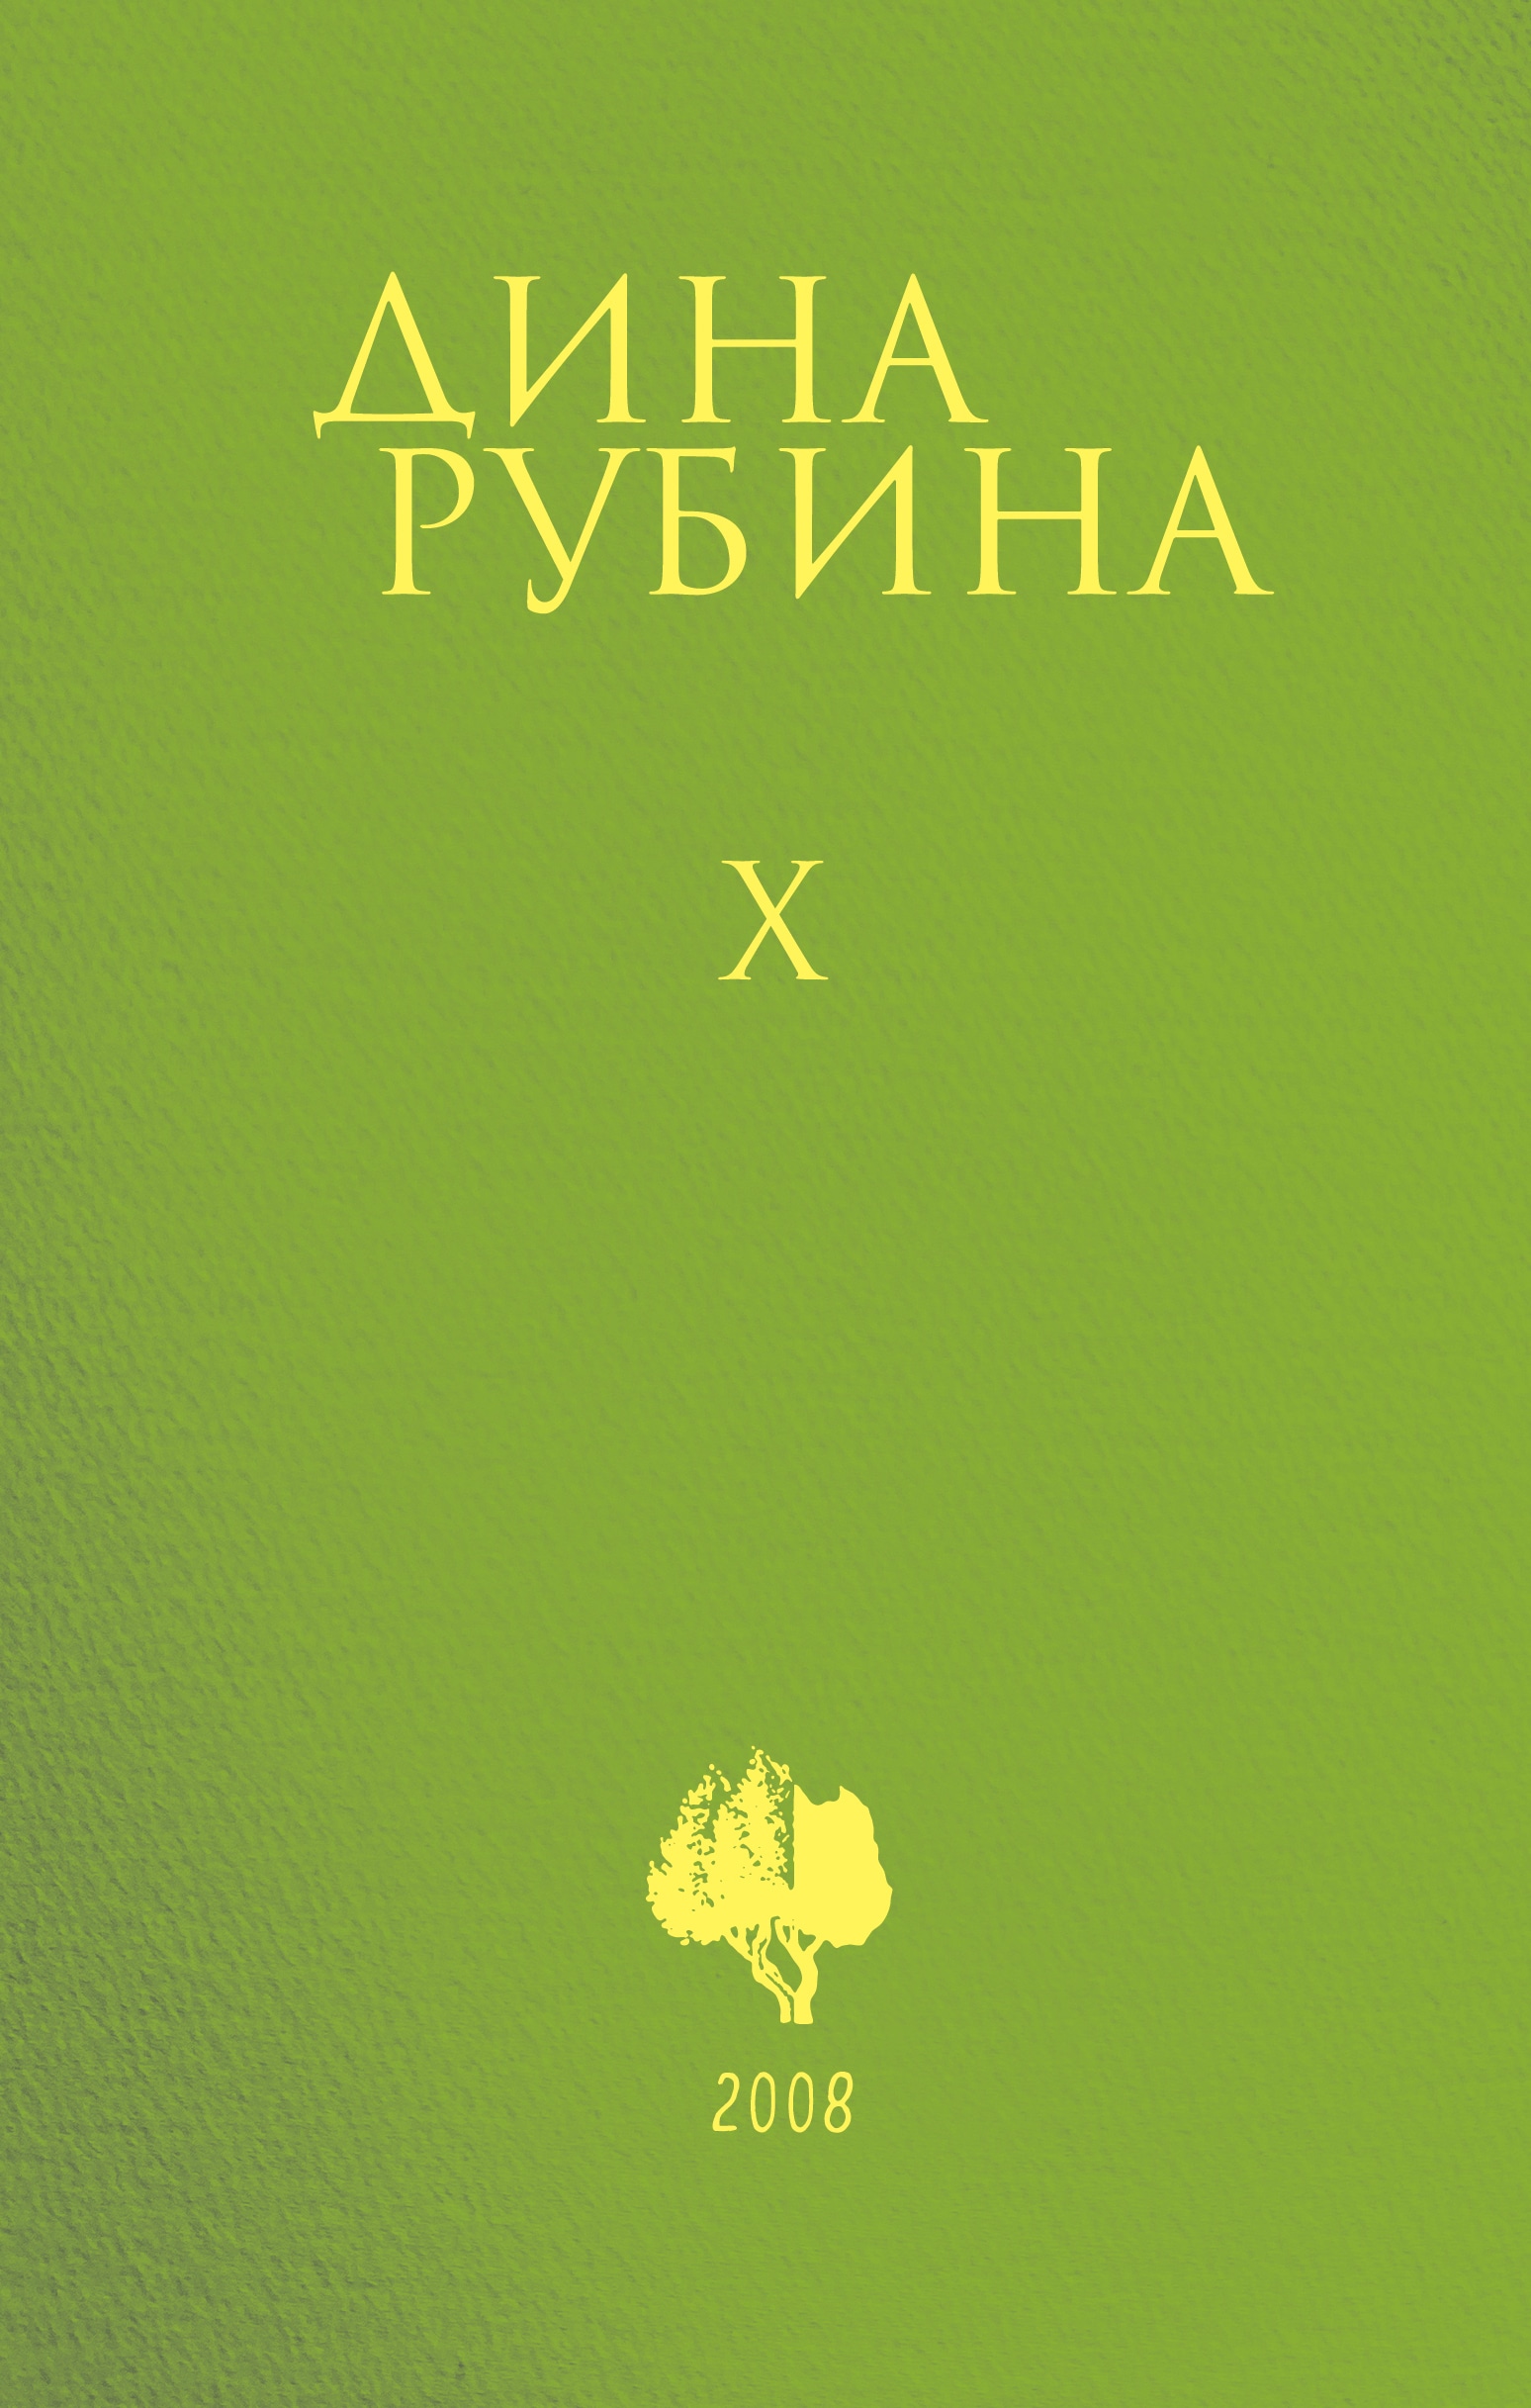 Book “Том 10” by Дина Рубина — October 21, 2021